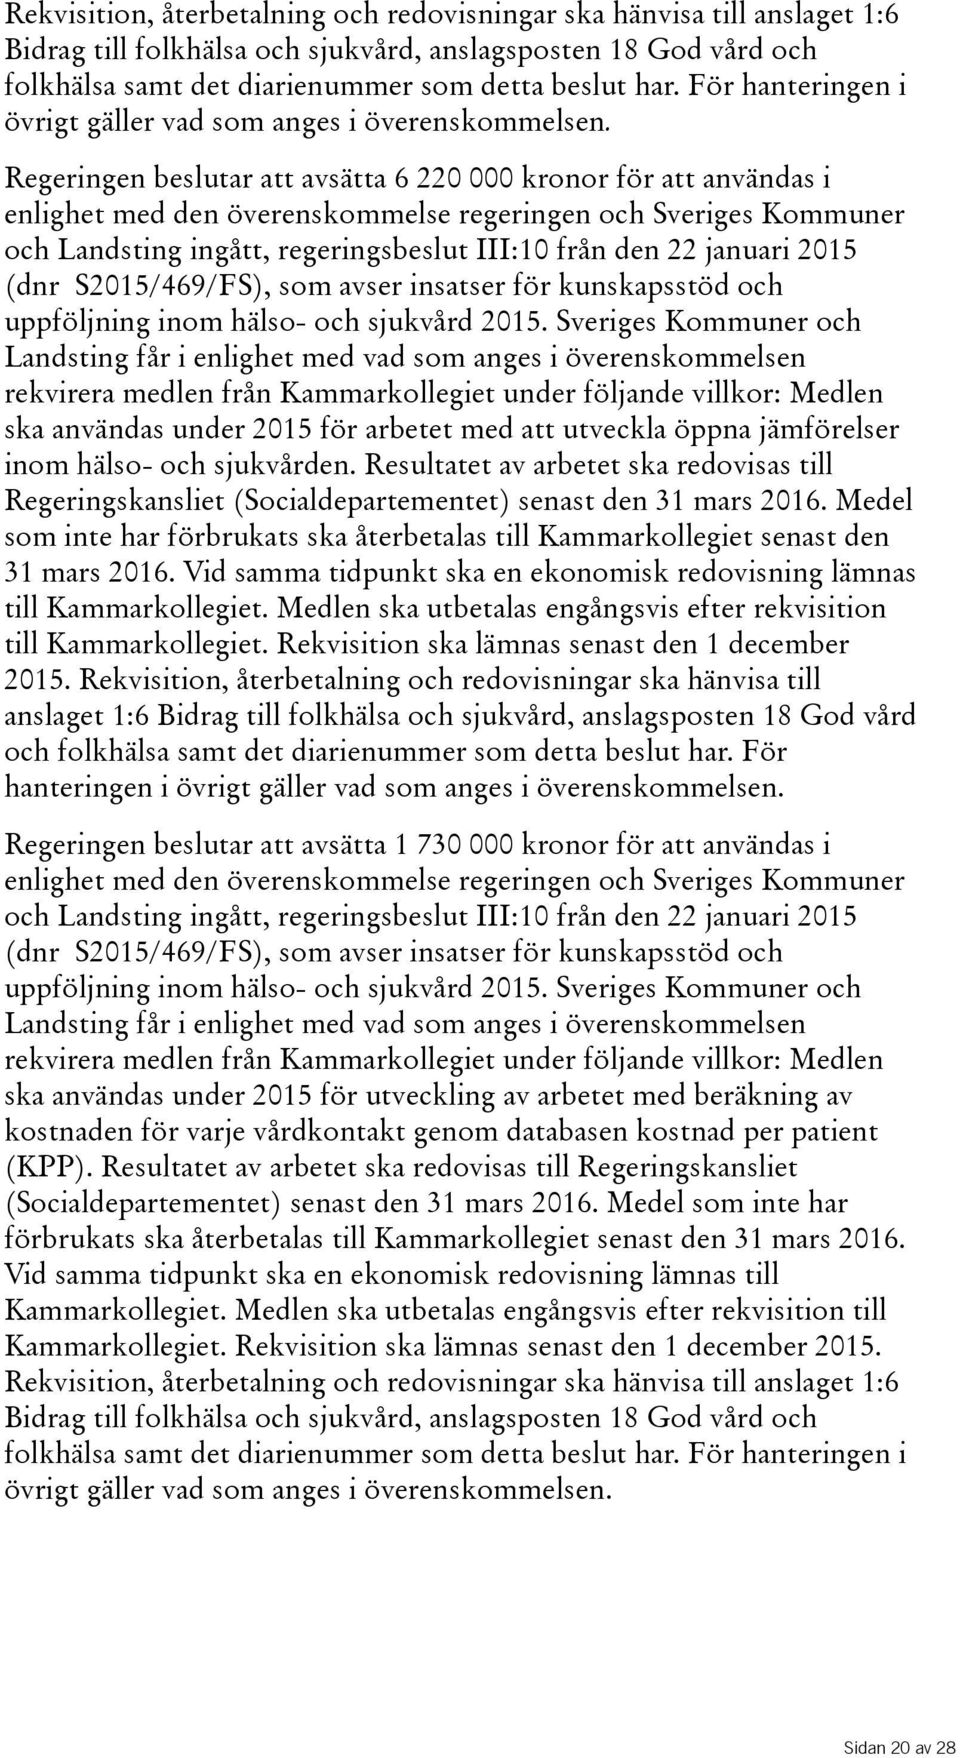 Regeringen beslutar att avsätta 6 220 000 kronor för att användas i enlighet med den överenskommelse regeringen och Sveriges Kommuner och Landsting ingått, regeringsbeslut III:10 från den 22 januari